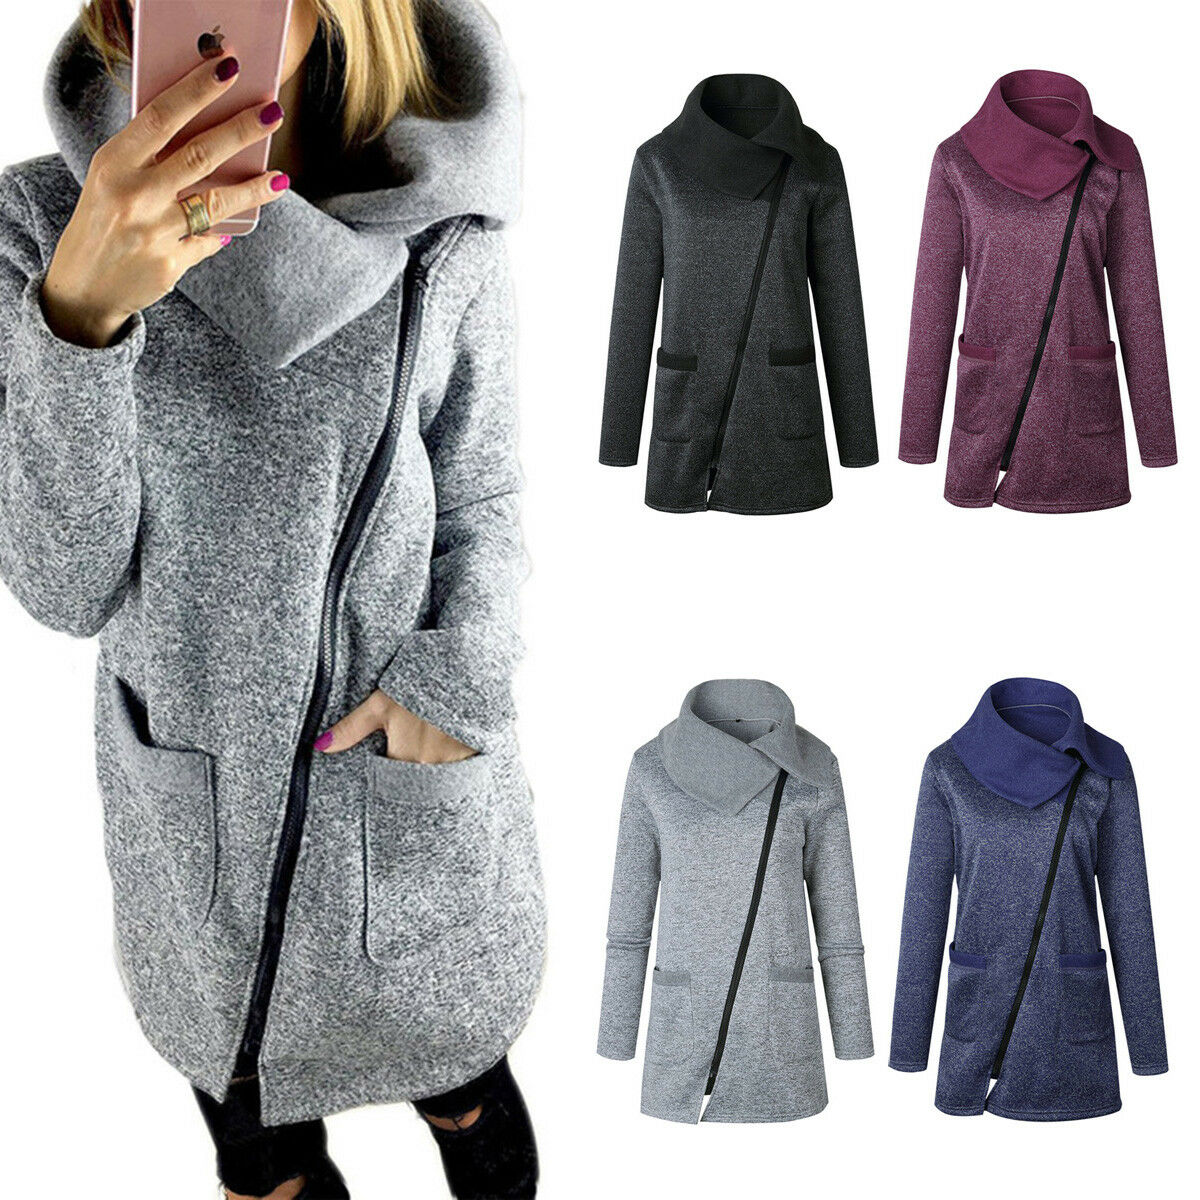 Women Fashion Winter Trench Coat Warm Parka Overcoat Long Jacket Zipper Outwear~